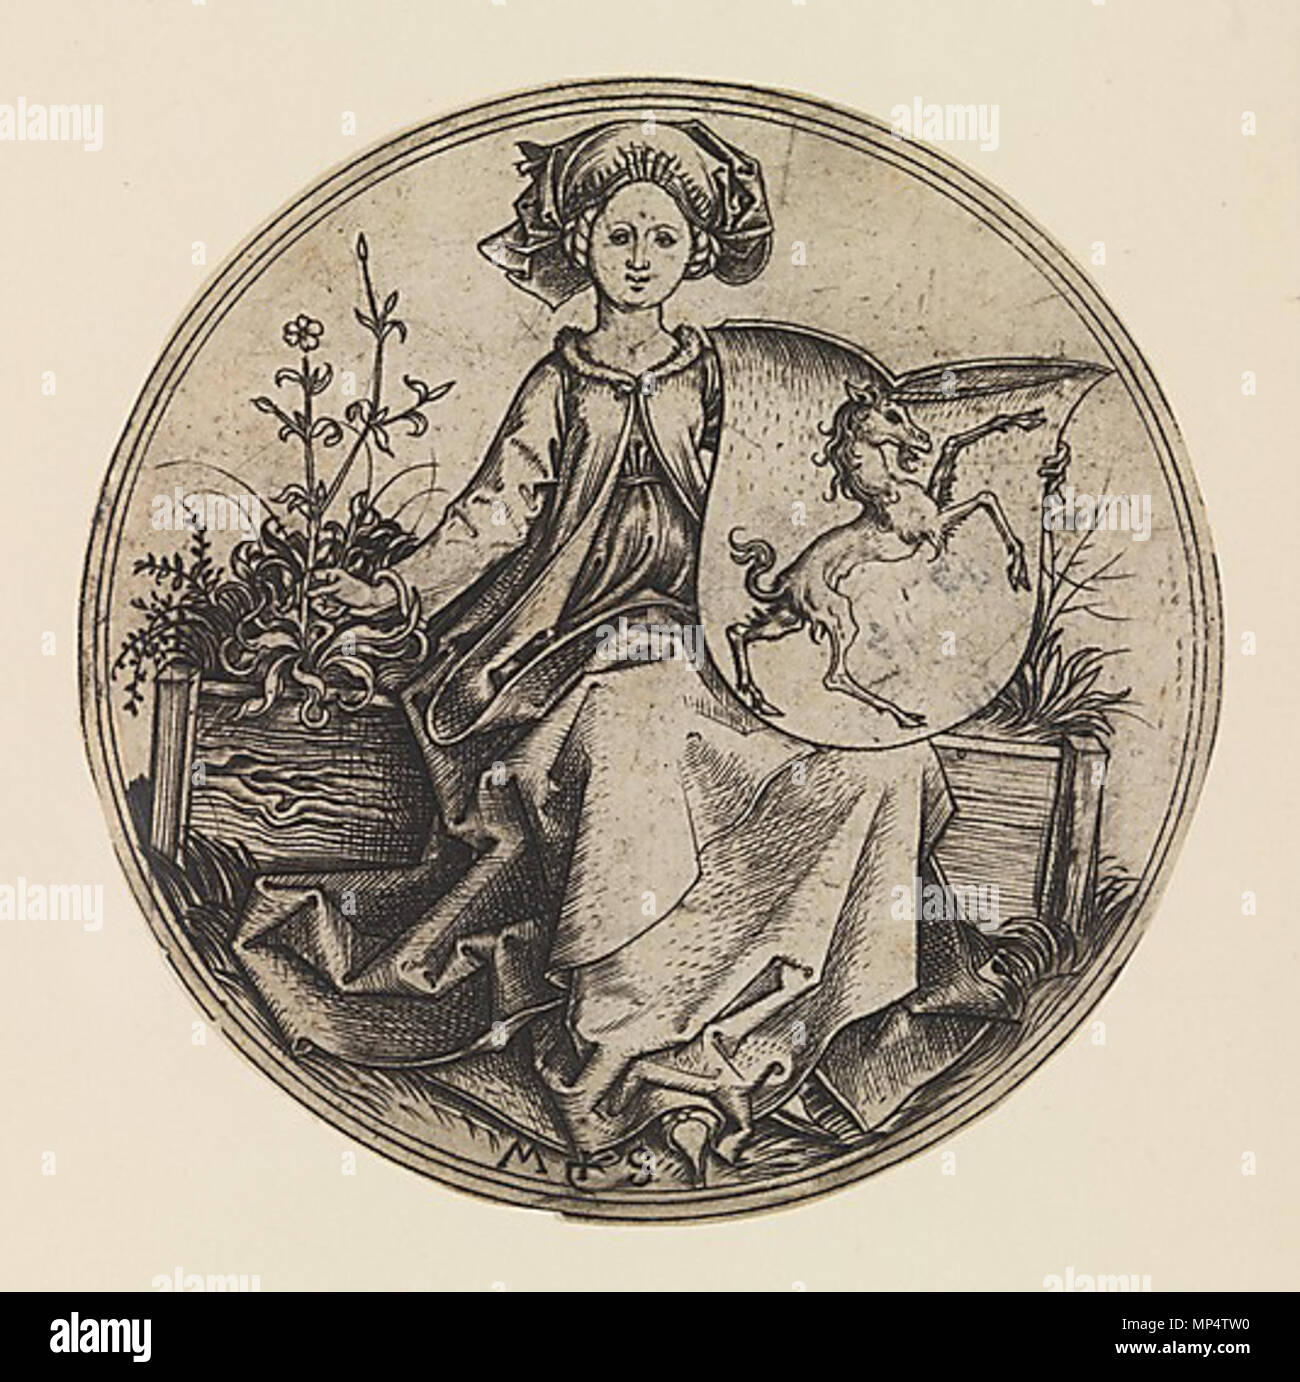 865 Martin Schongauer - Wappenschild mit Einhorn, von einer jungen Frau gehalten (L 96) Stock Photo